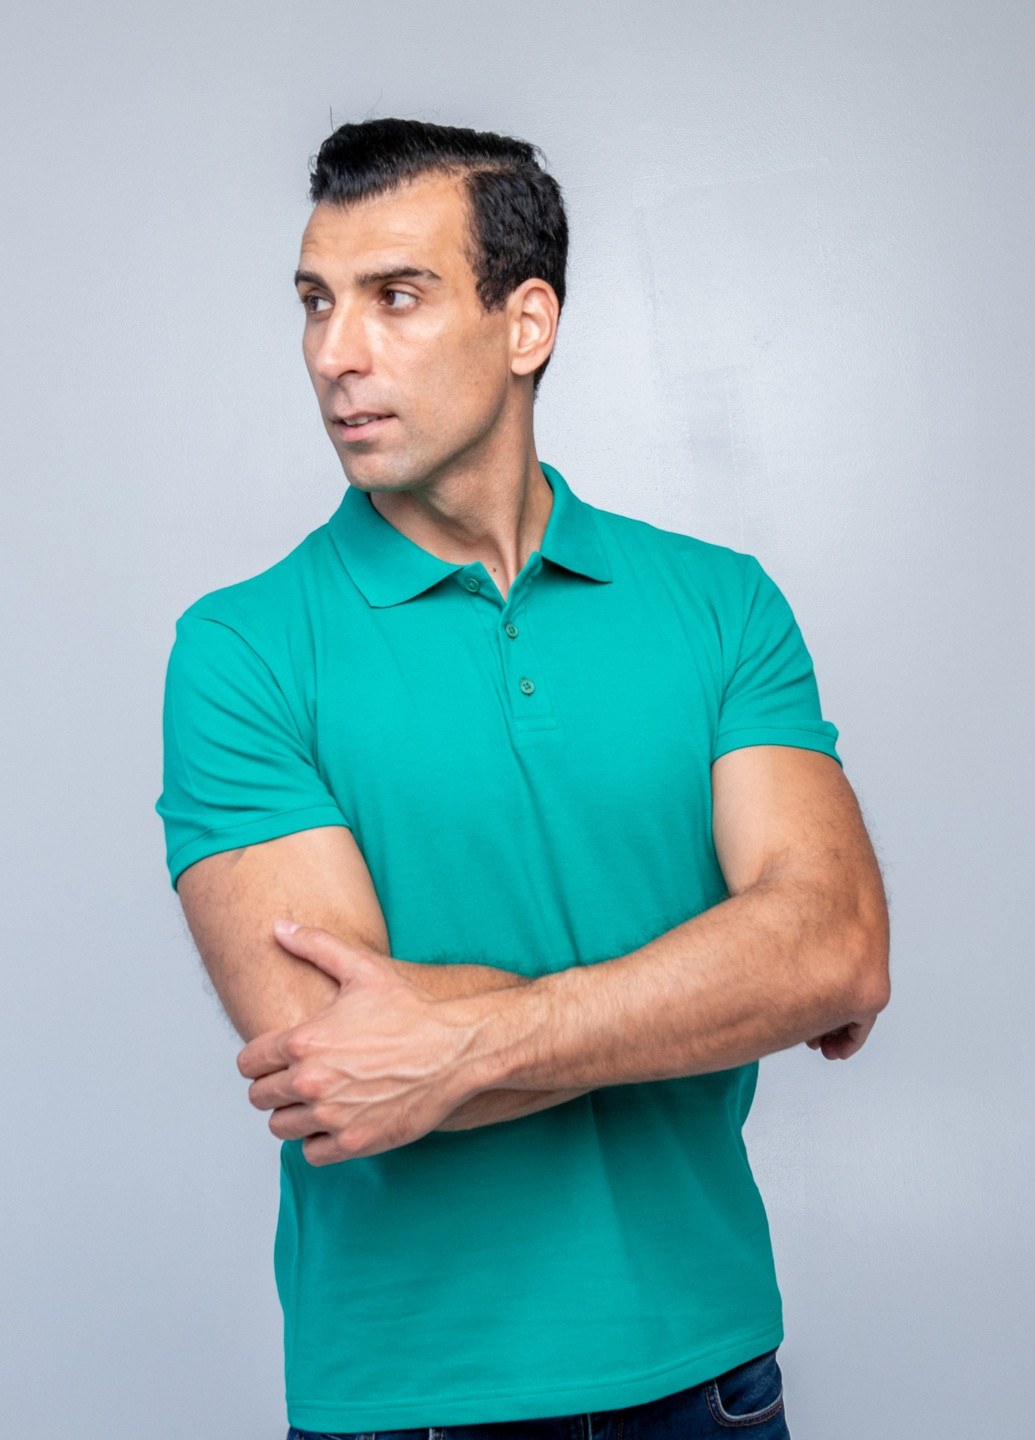 Зеленая футболка-футболка поло чоловіча для мужчин TvoePolo однотонная